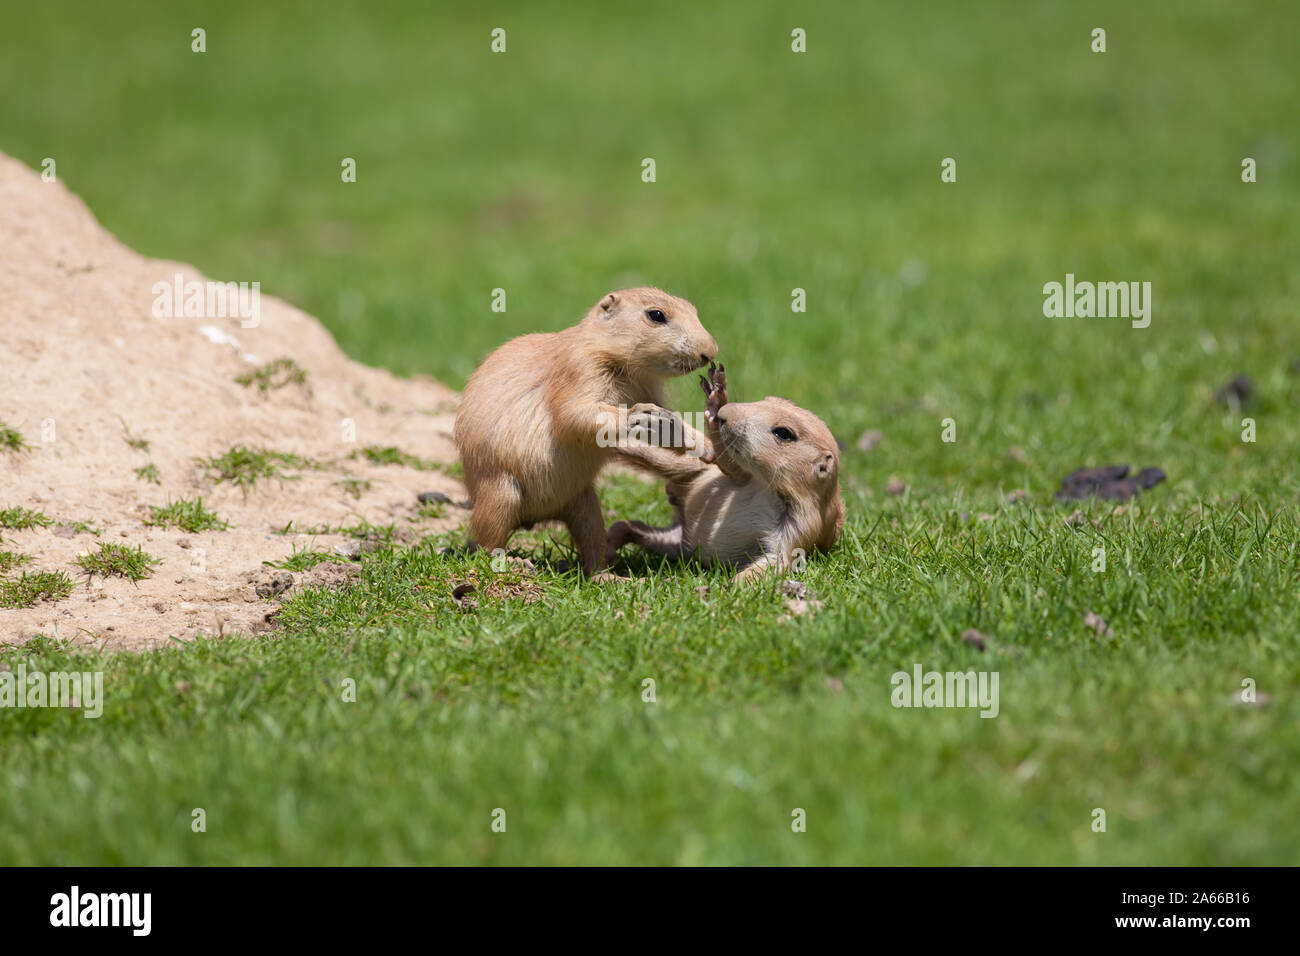 Carino baby animali durante la riproduzione. La marmotta i cani della prateria divertirsi insieme.Giovane nero-tailed prairie marmotte giocare combattimenti sull'erba. Foto Stock